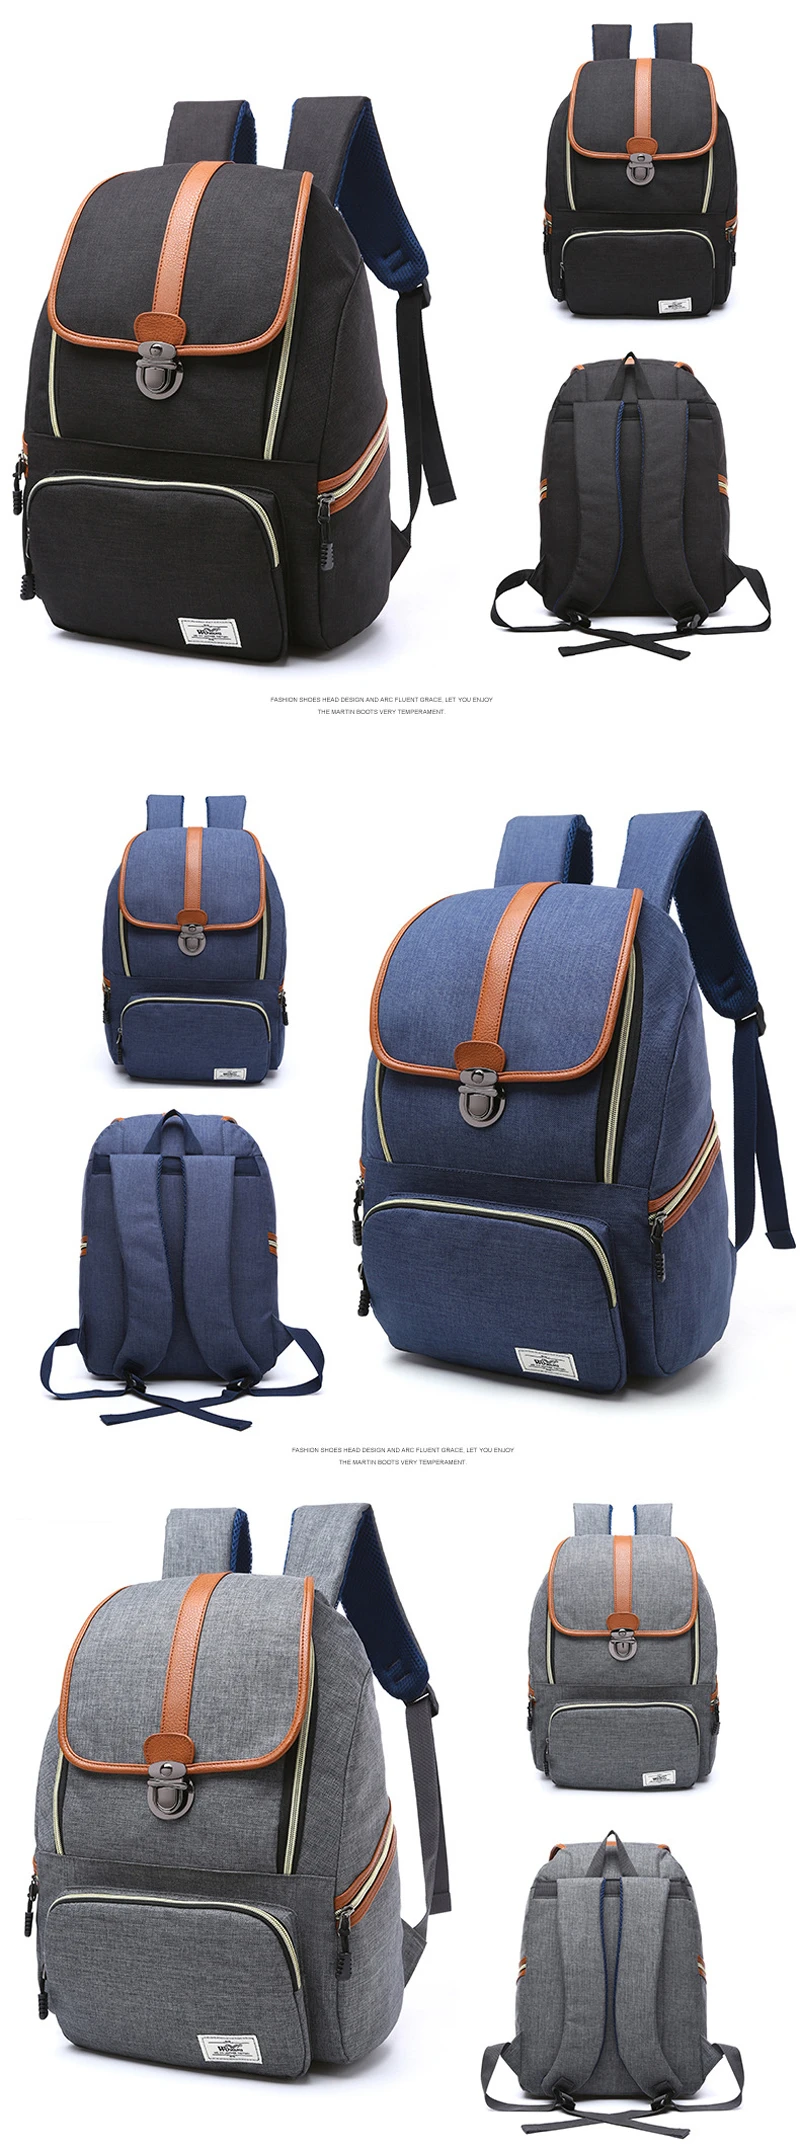 Винтажный дизайн высокого качества новые детские школьные сумки рюкзаки детская лучшая сумка для школы водонепроницаемые Mochila